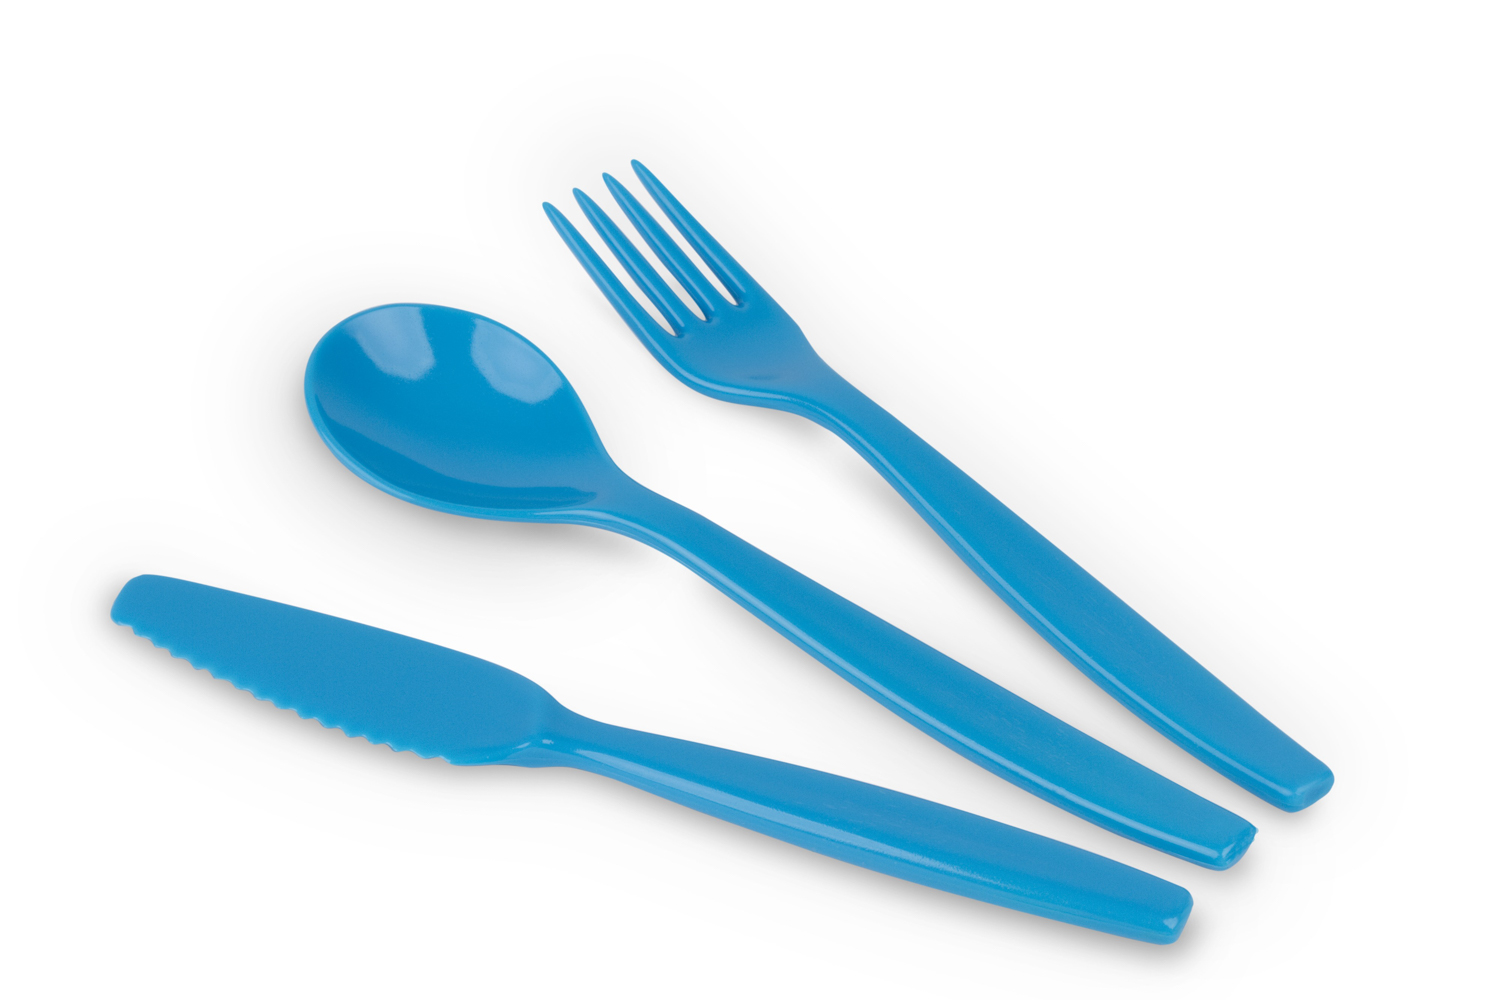 Kinderzeug Besteck-Set BRISE, hellblau, 3-teilig: Messer, Gabel, Löffel, spülmaschinen- geeignet. Länge ca. 16,5 cm, Gewicht 31 g